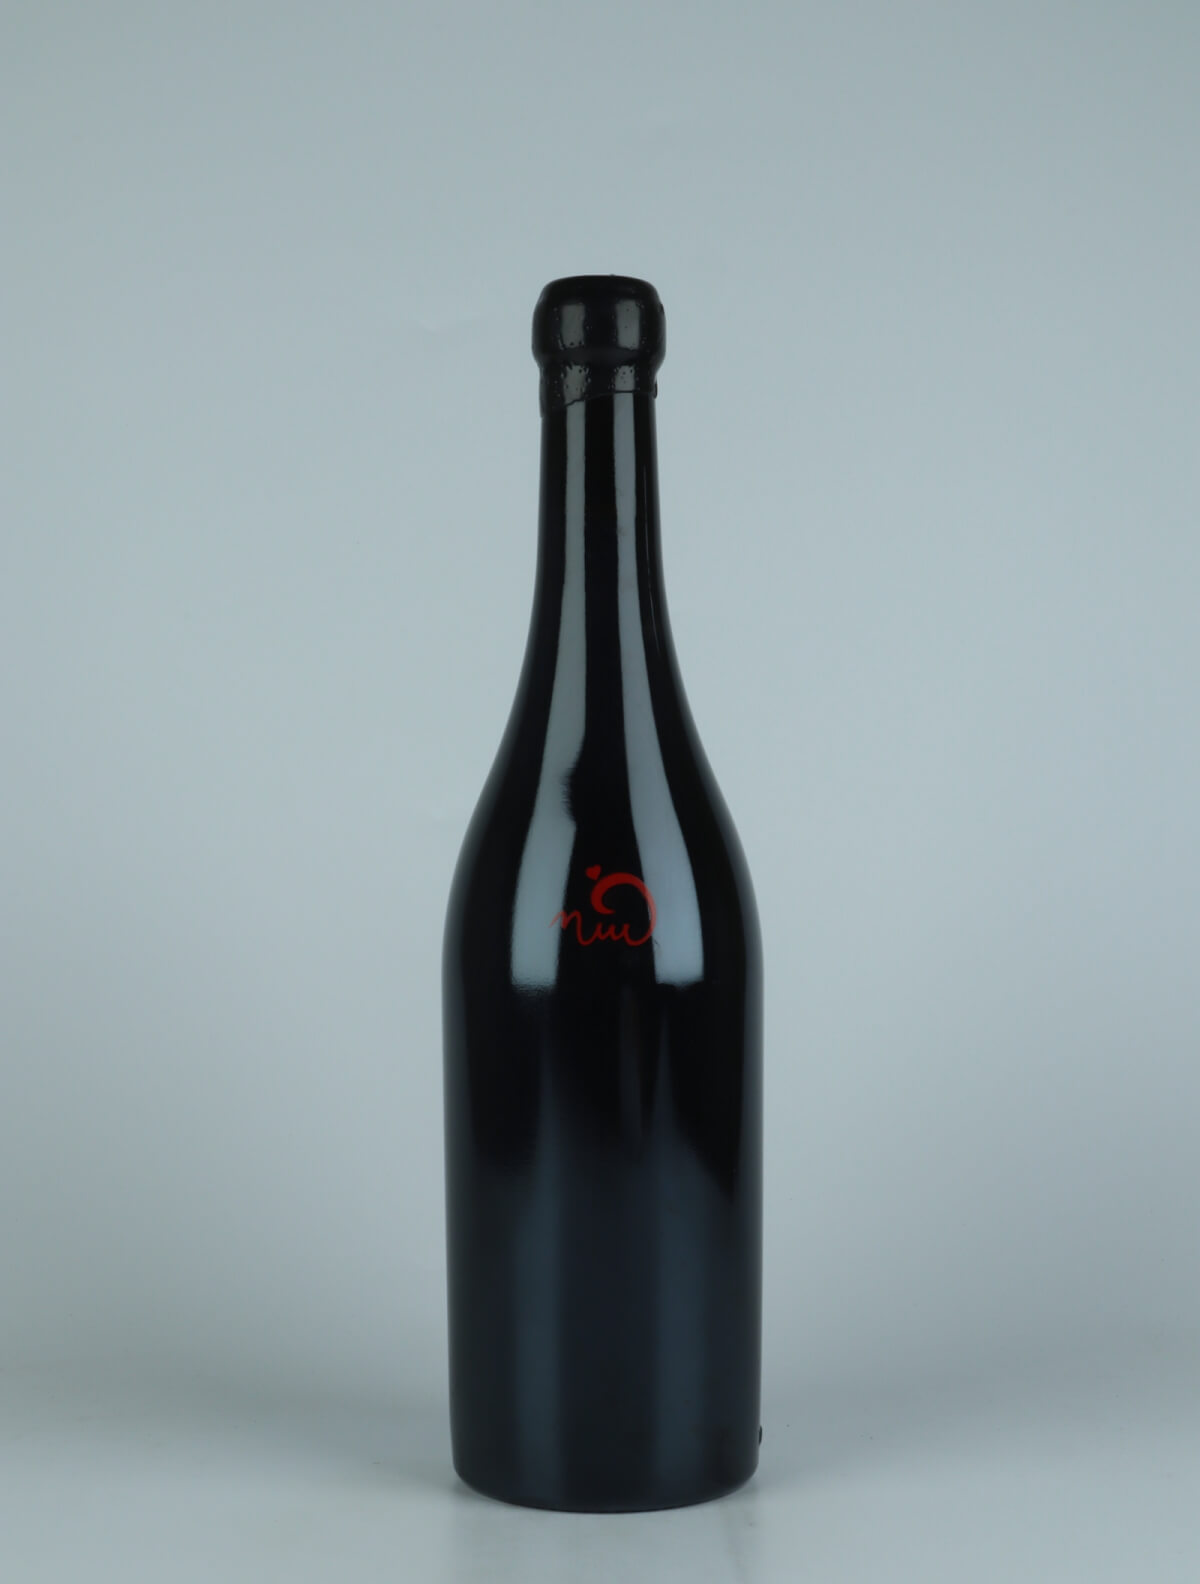 En flaske 2019 Vi Negre Rødvin fra Els Jelipins, Penedès i Spanien